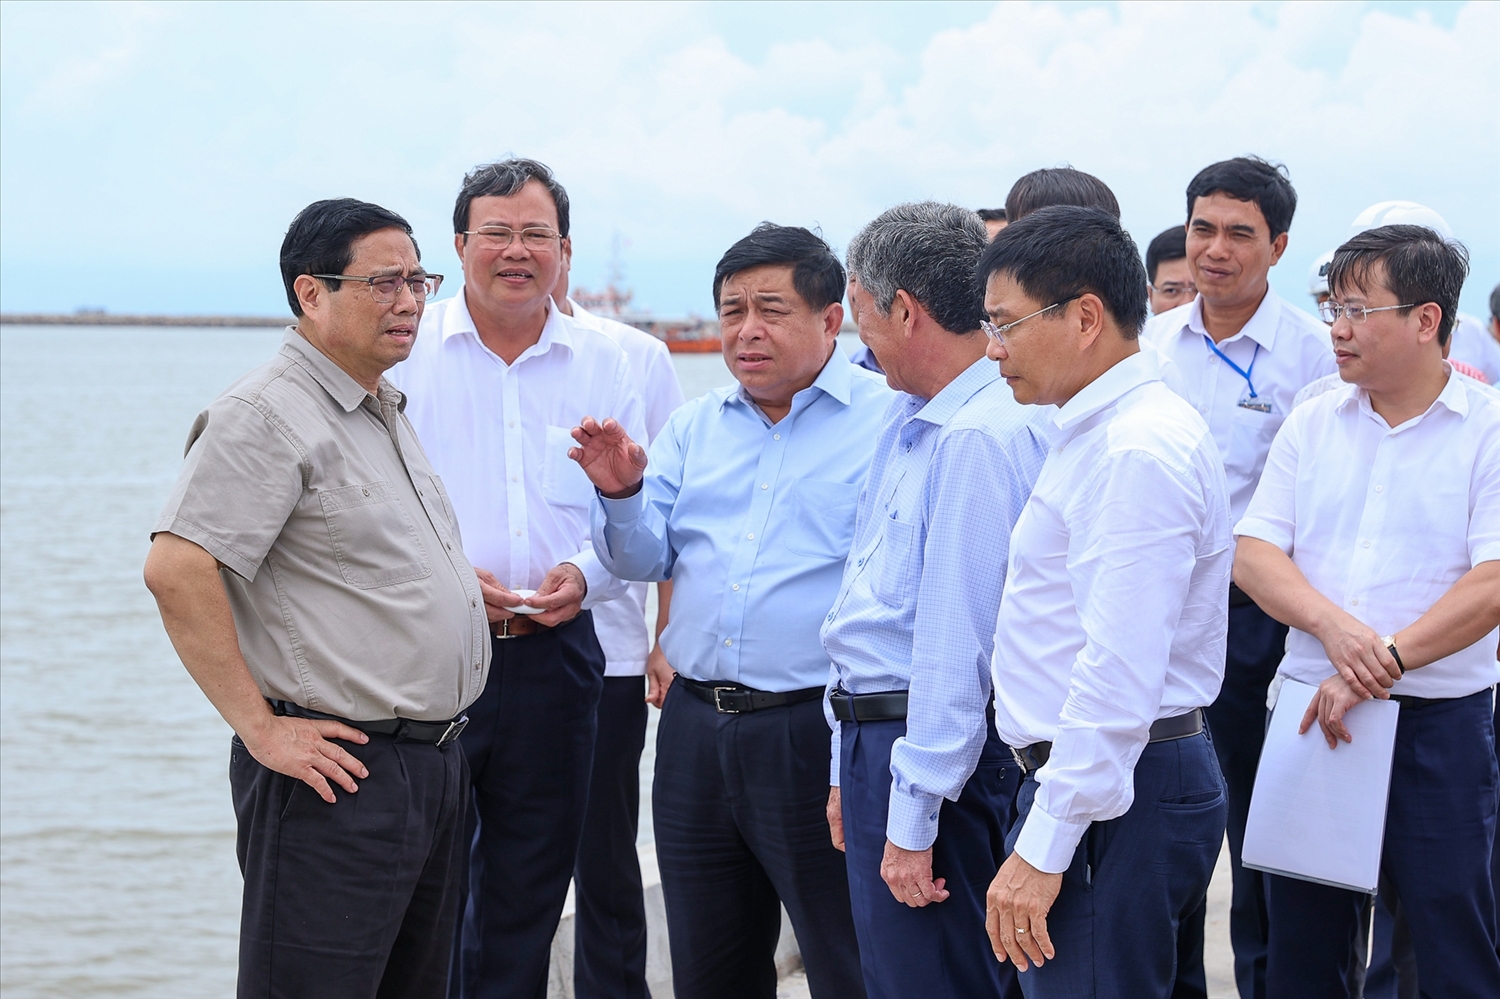 Thủ tướng Chính phủ Phạm Minh Chính cùng đại diện lãnh đạo các Bộ, ngành khảo sát cảng biển trong chuyến công tác Trà Vinh (ảnh: Cổng thông tin điện tử tỉnh Trà Vinh) 